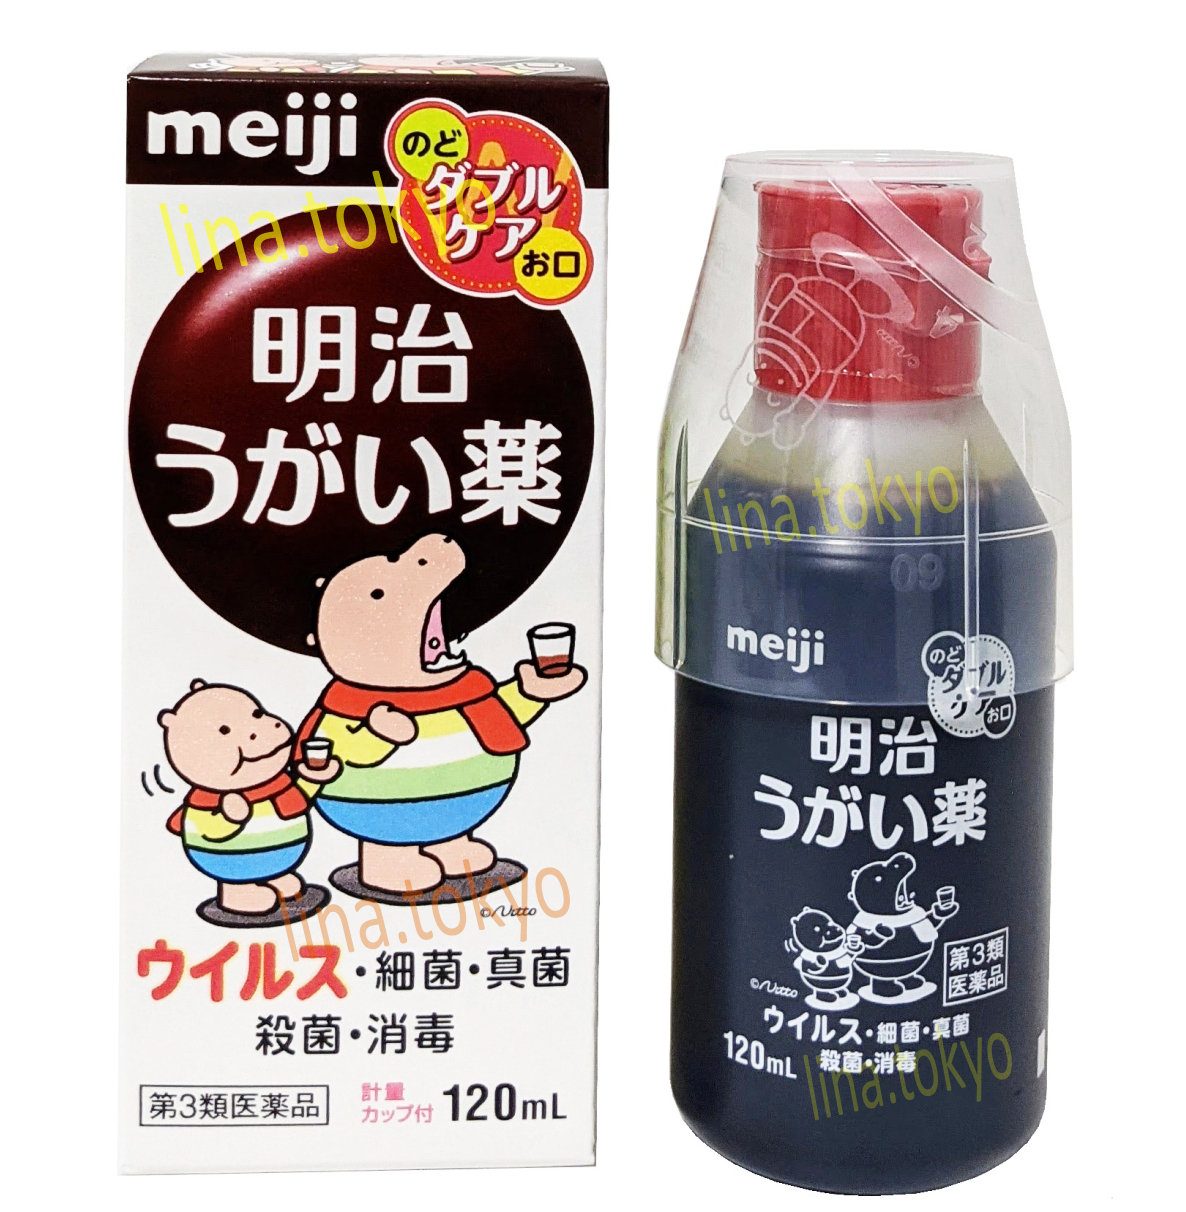 Nước thuốc súc họng, súc miệng nhật bản Meiji 120ml chứa Povidone iodine sát khuẩn, khử trùng miệng, cổ họng, trị viêm họng, loại bỏ hơi thở có mùi (H4010) (Miễn phí giao hàng)